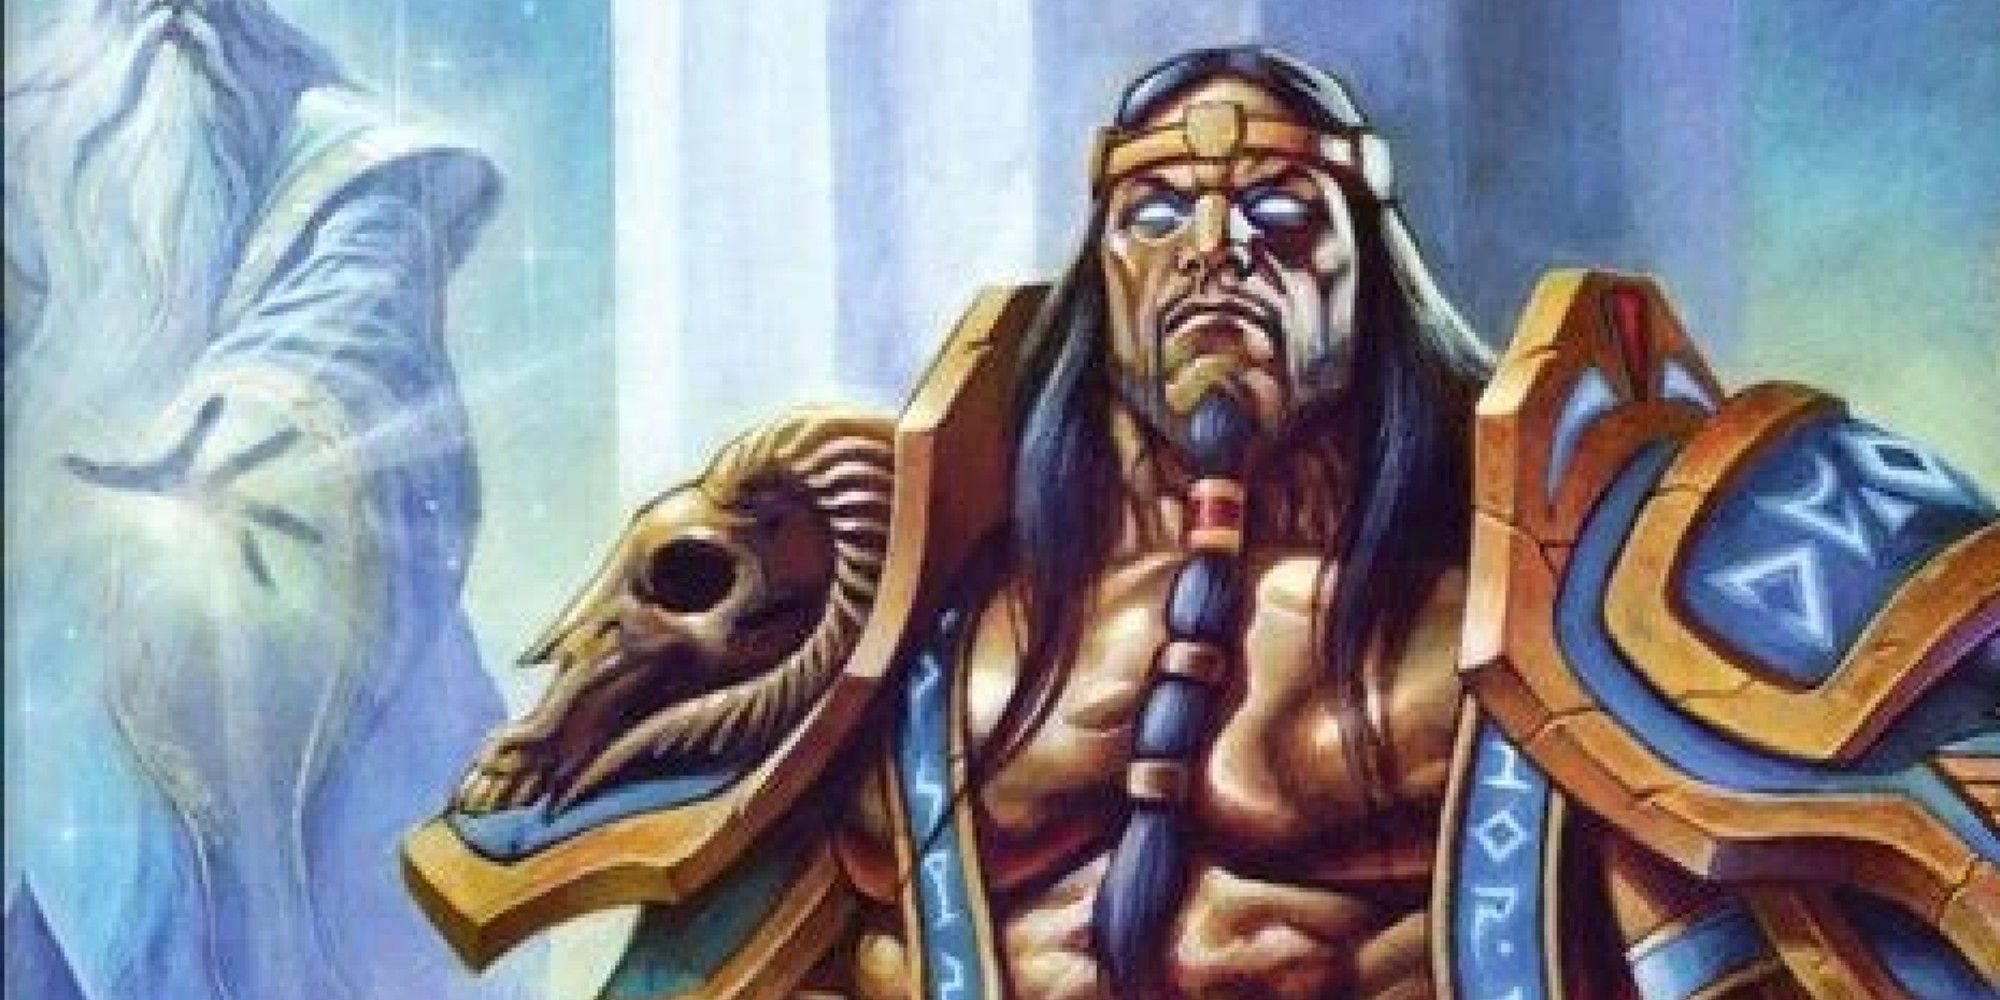 World of Warcraft Sargeras as a Titan